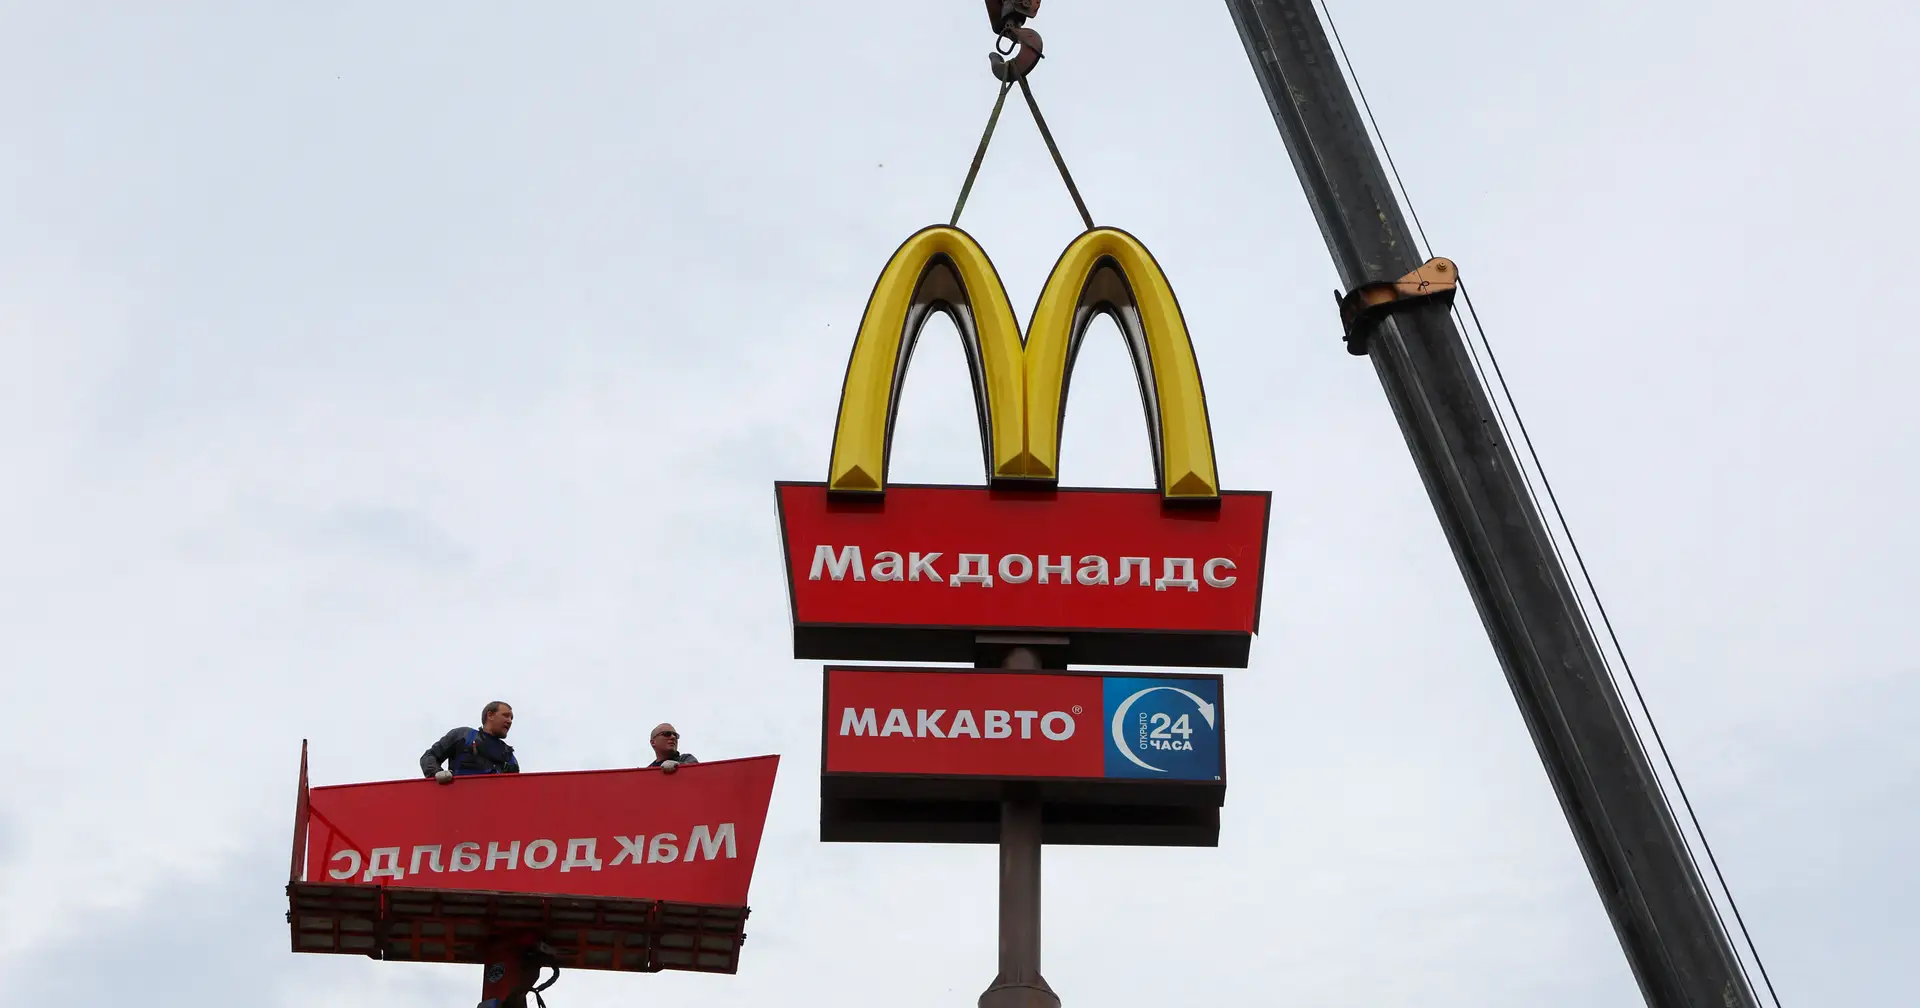 Nuevo dueño reemplaza el logo de McDonald’s en Rusia